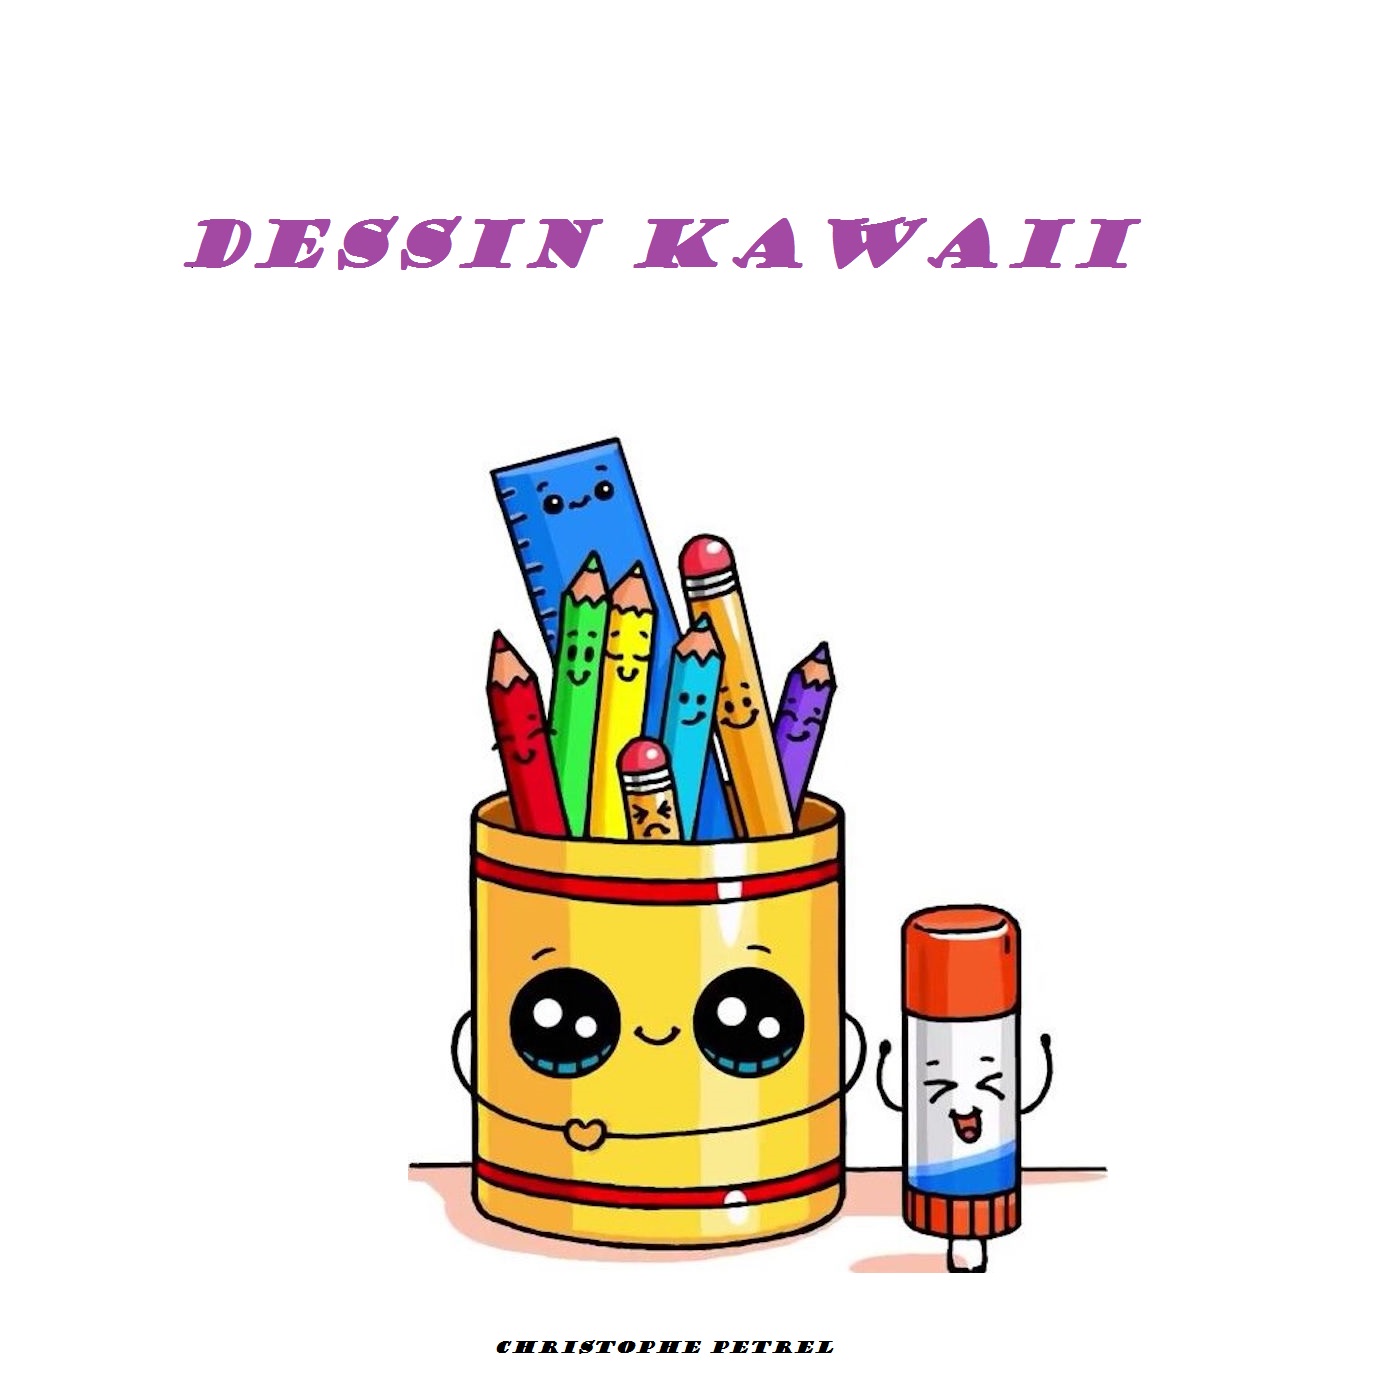 Dessin kawaii-Livre pour apprendre le dessin kawaii facilement